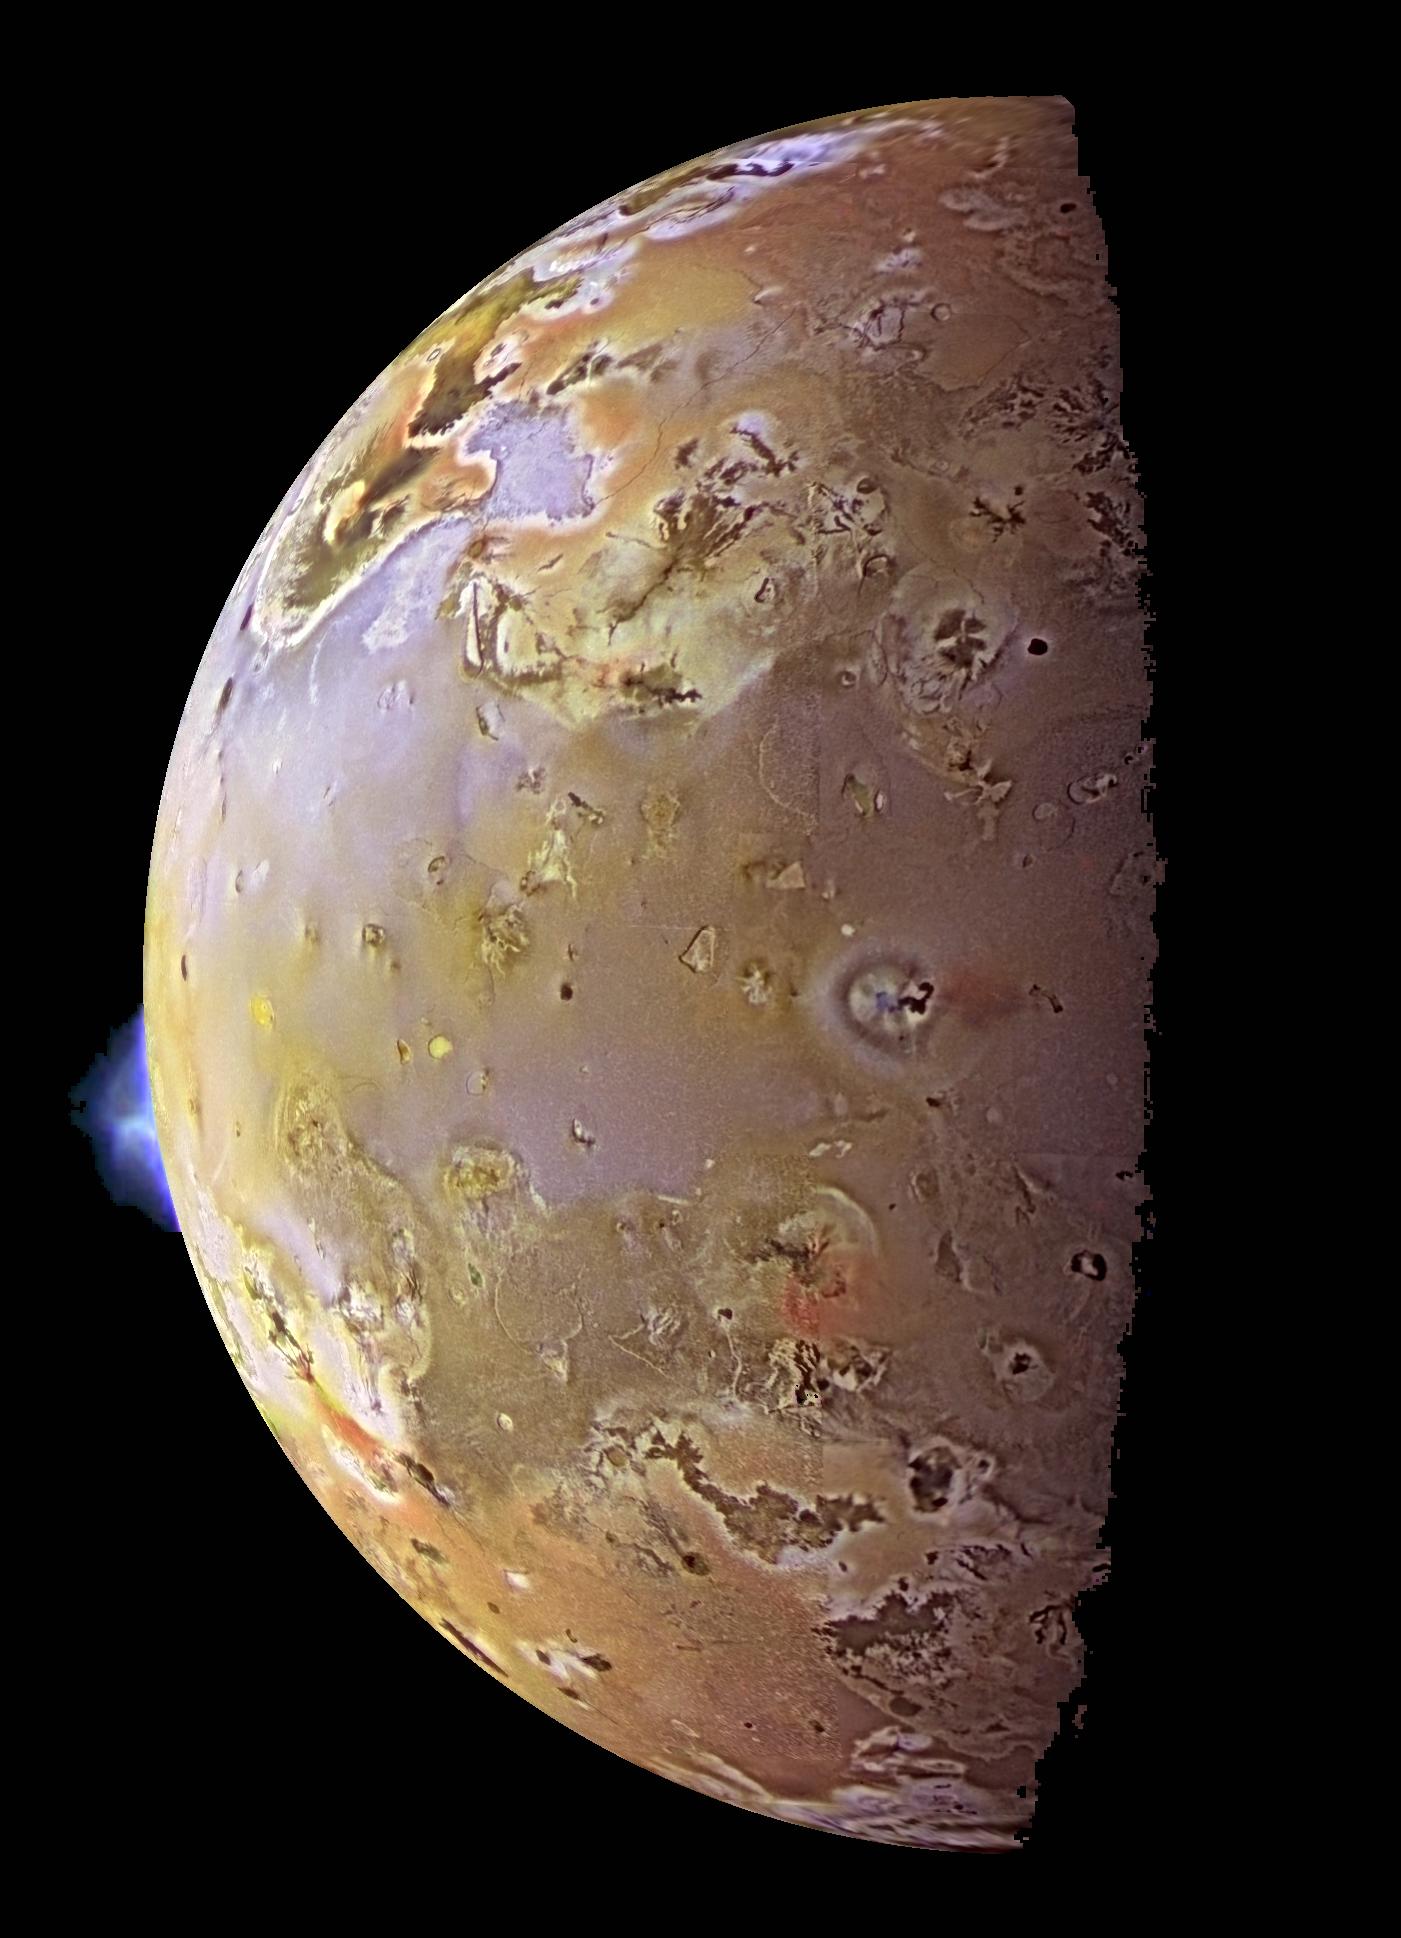 ALMA Shows Volcanic Impact on Io's Atmosphere